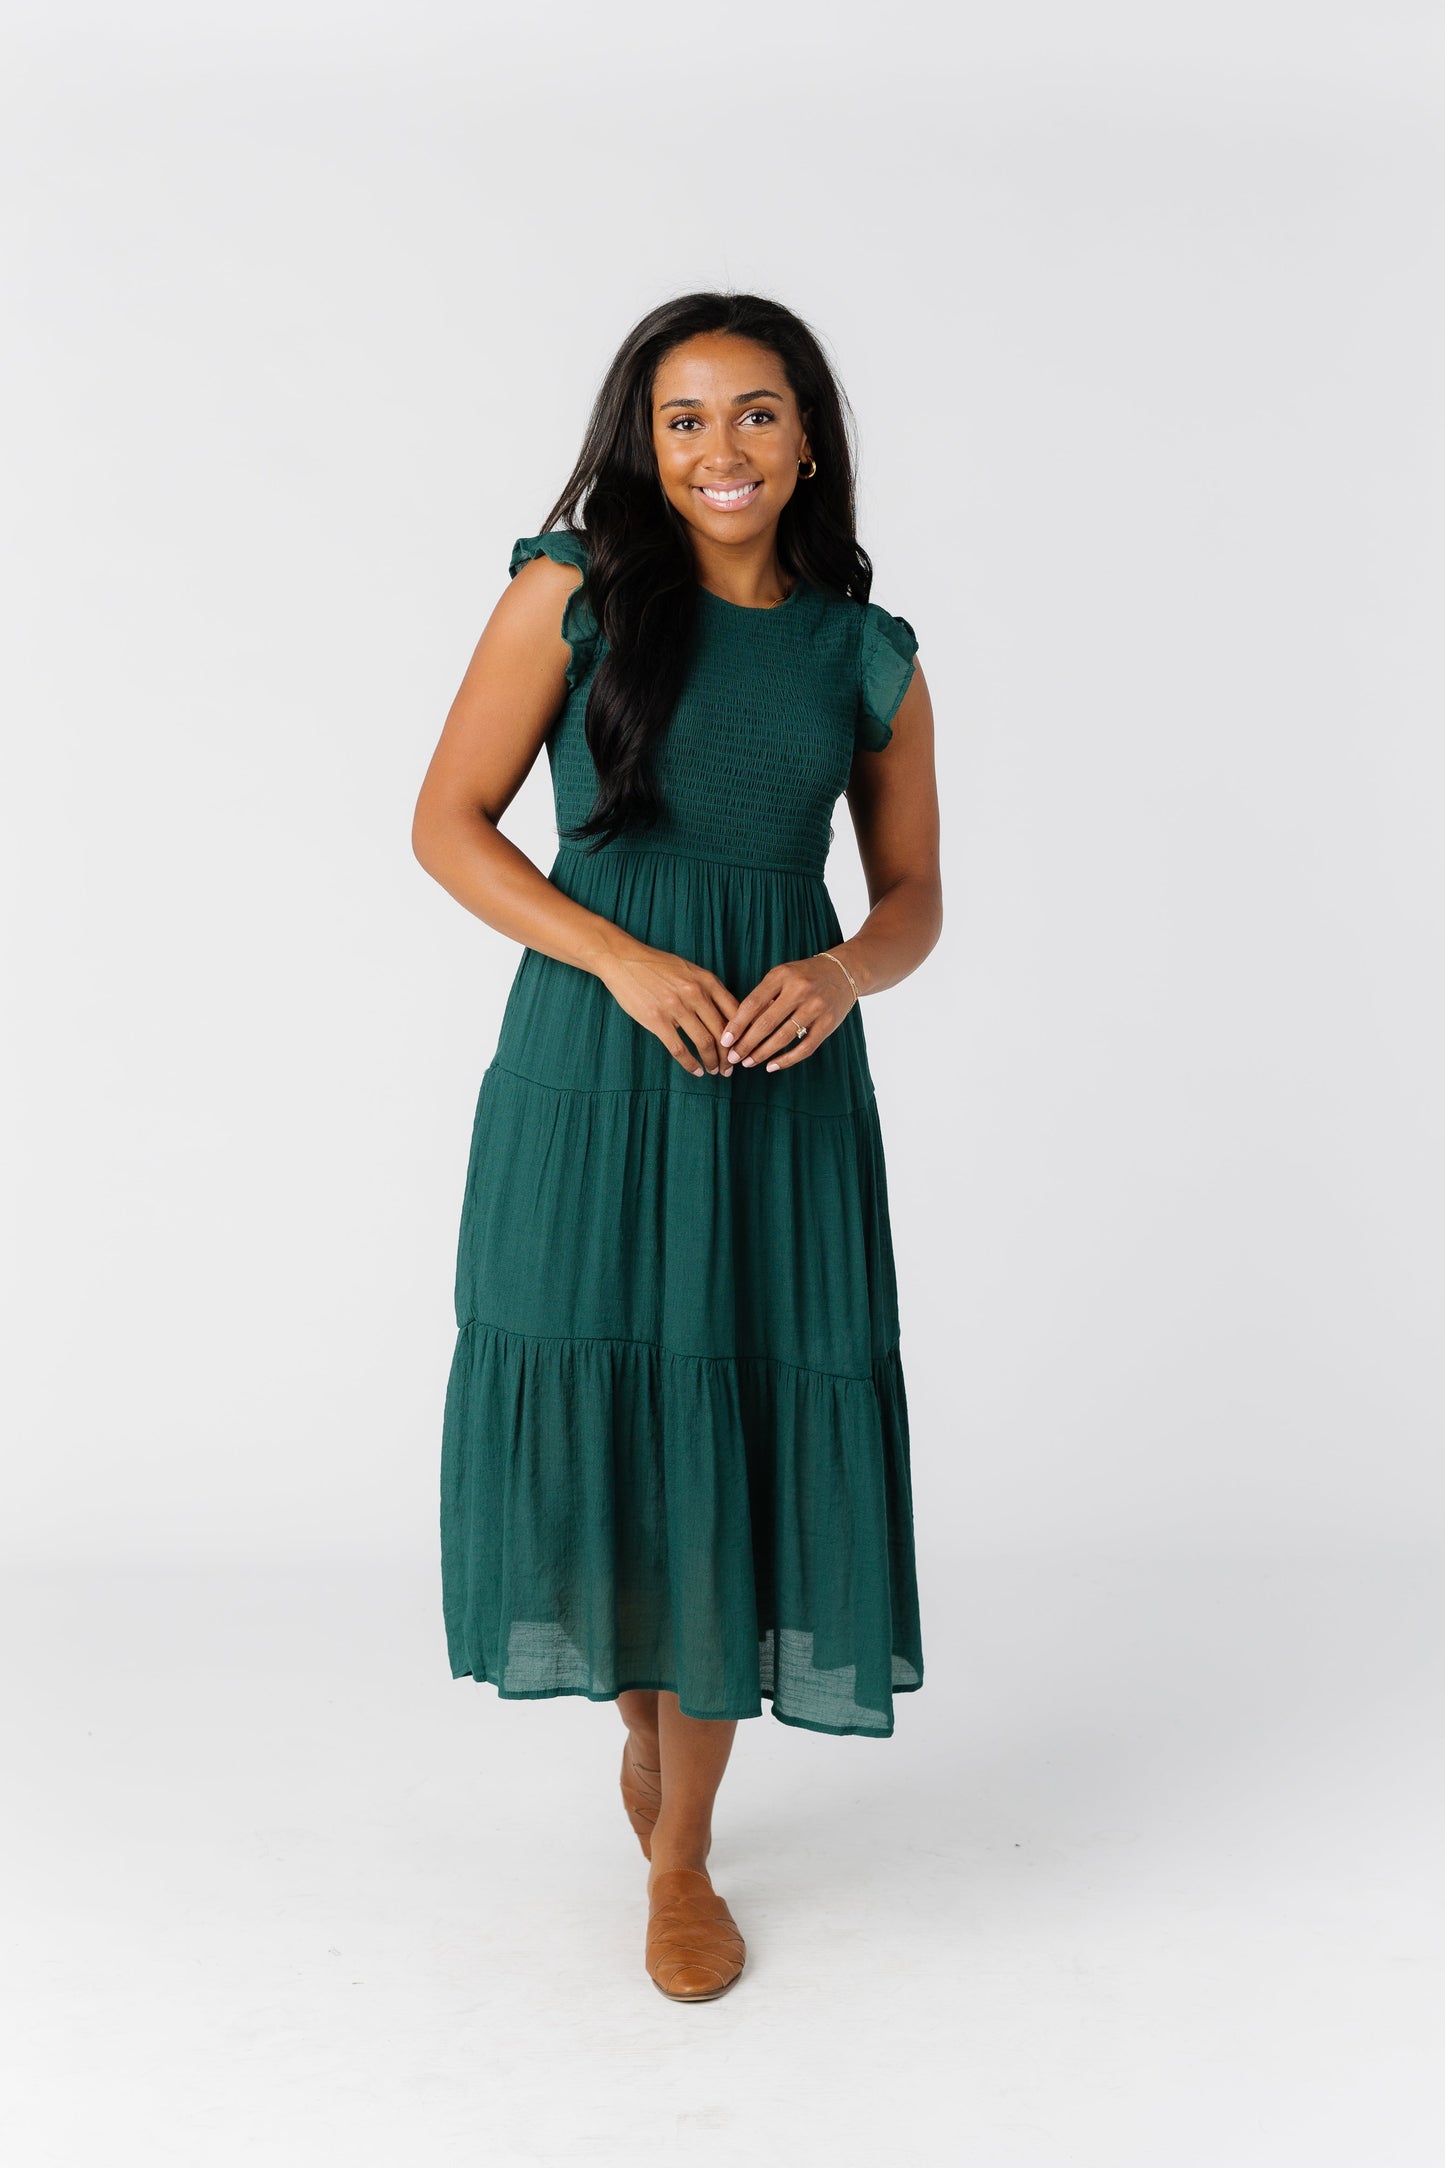 All In Smocked Dress WOMEN'S DRESS Blu Pepper Hunter Green L 